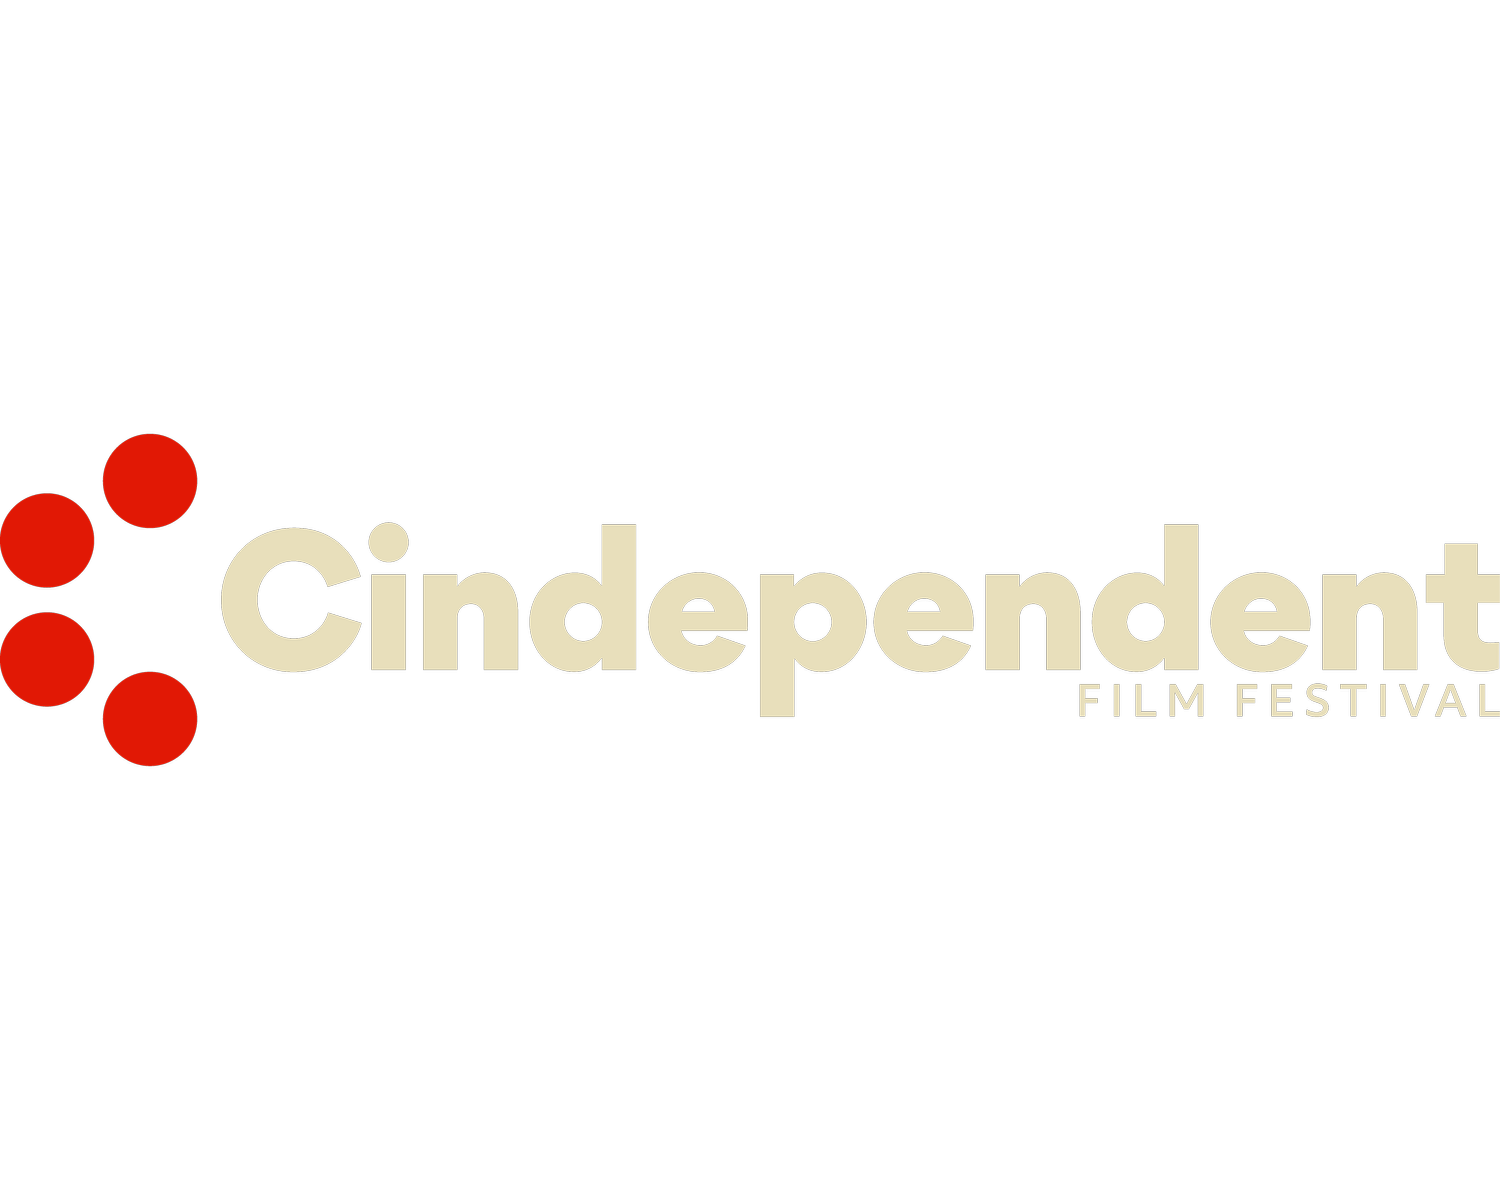 Cindependent Film Fest in Cincinnati, Ohio